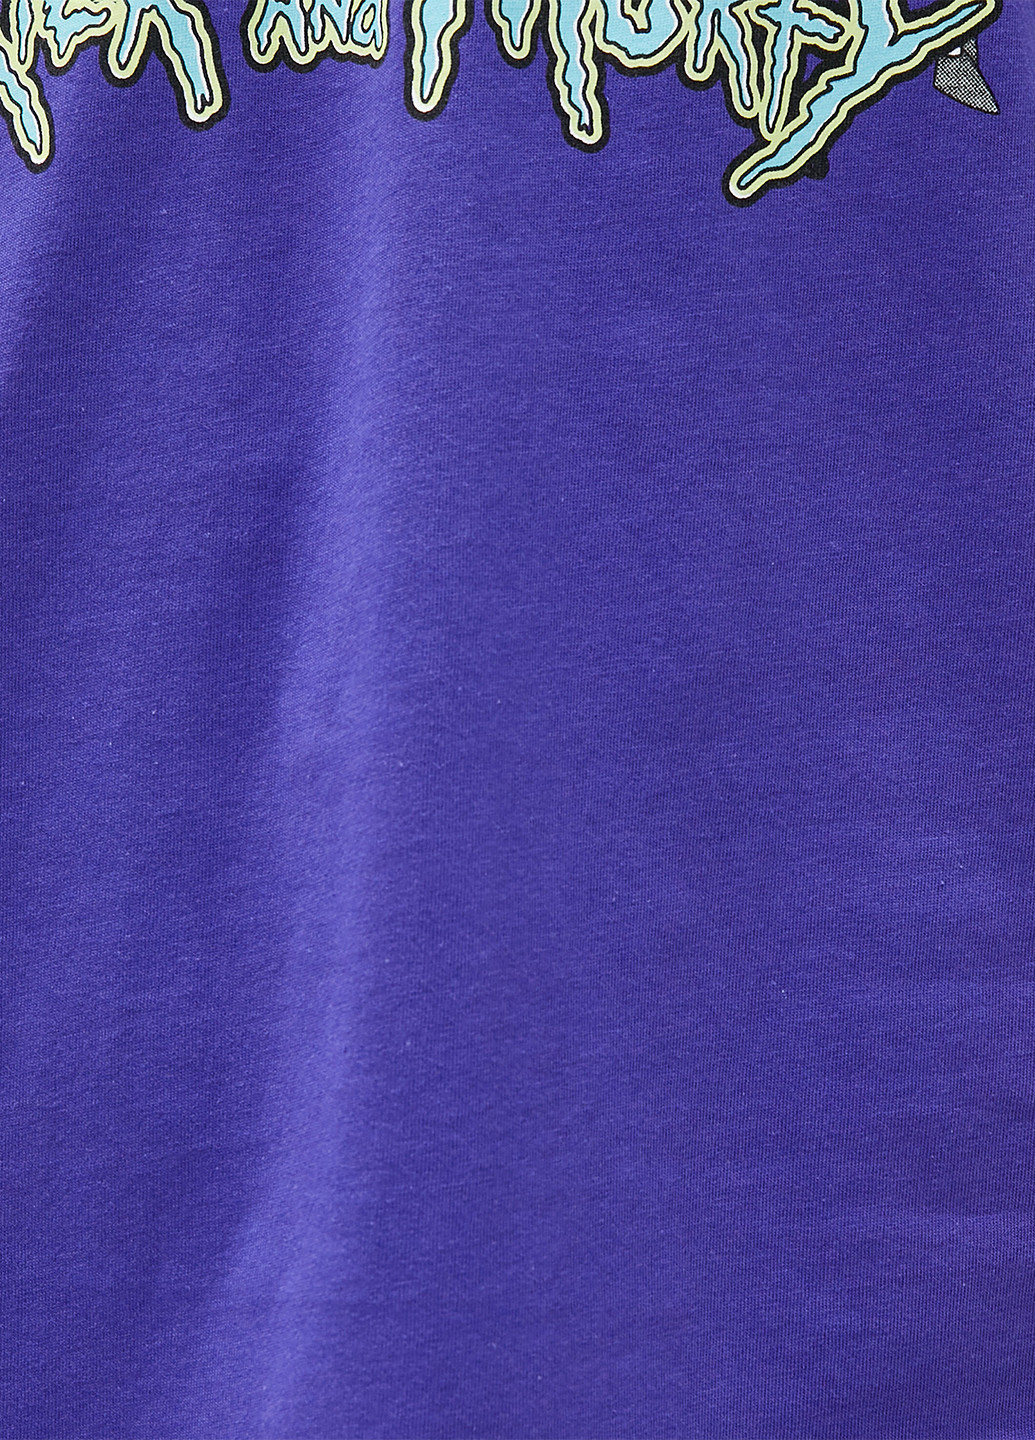 Фіолетова футболка KOTON